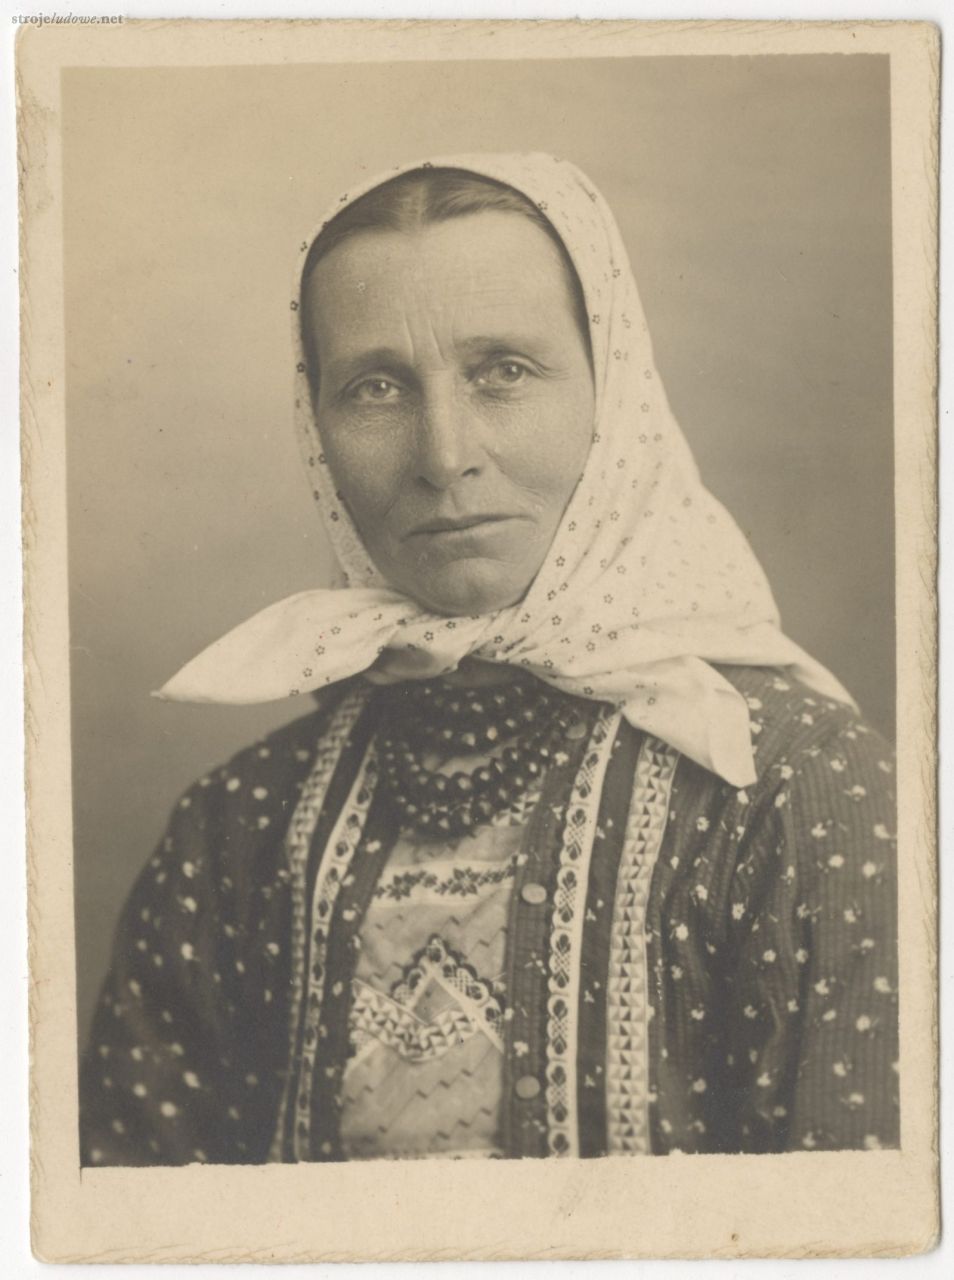 Elżbieta Biba (Zejma) 1934 r., ze zbiorów Muzeum Śląskiego w Katowicach.
Na zdjęciach do dokumentów Wilamowianki widoczne są bez czepców, ale w pełnym stroju (w tym wypadku codziennym wyjściowym). 
